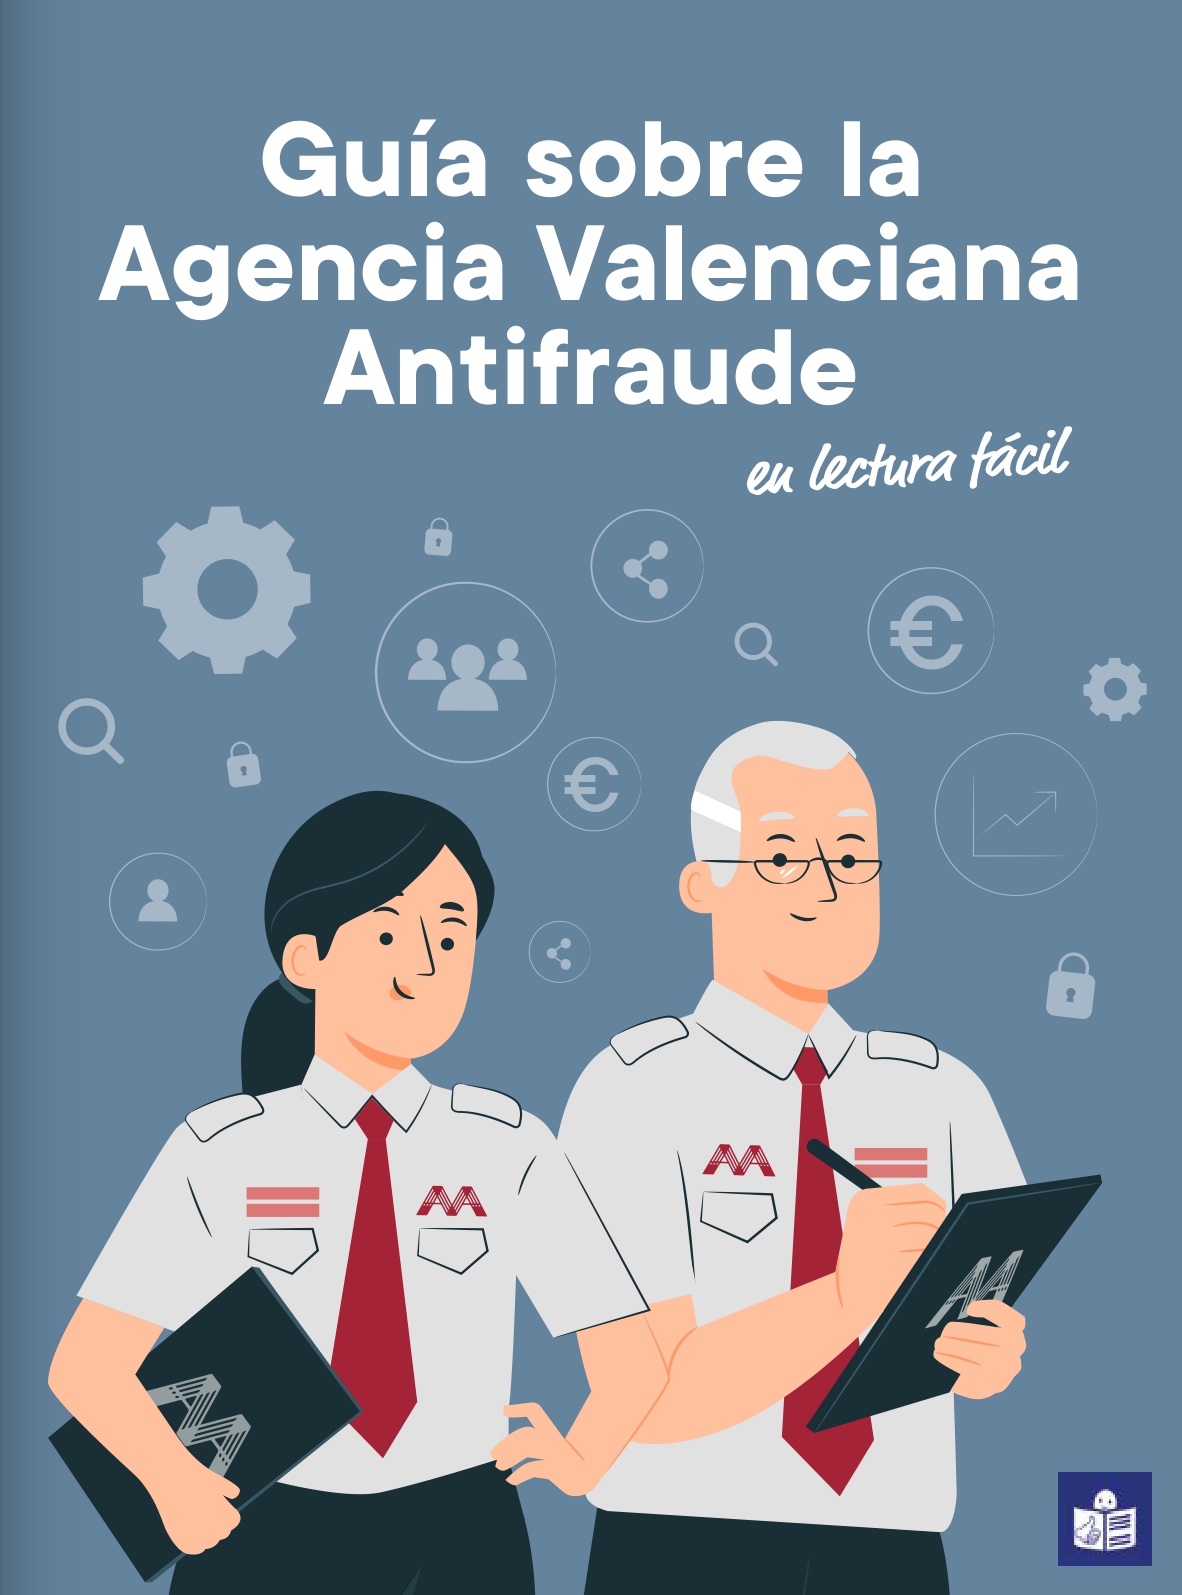 Los registradores editan una guía en Lectura Fácil sobre la Agencia Valenciana Antifraude